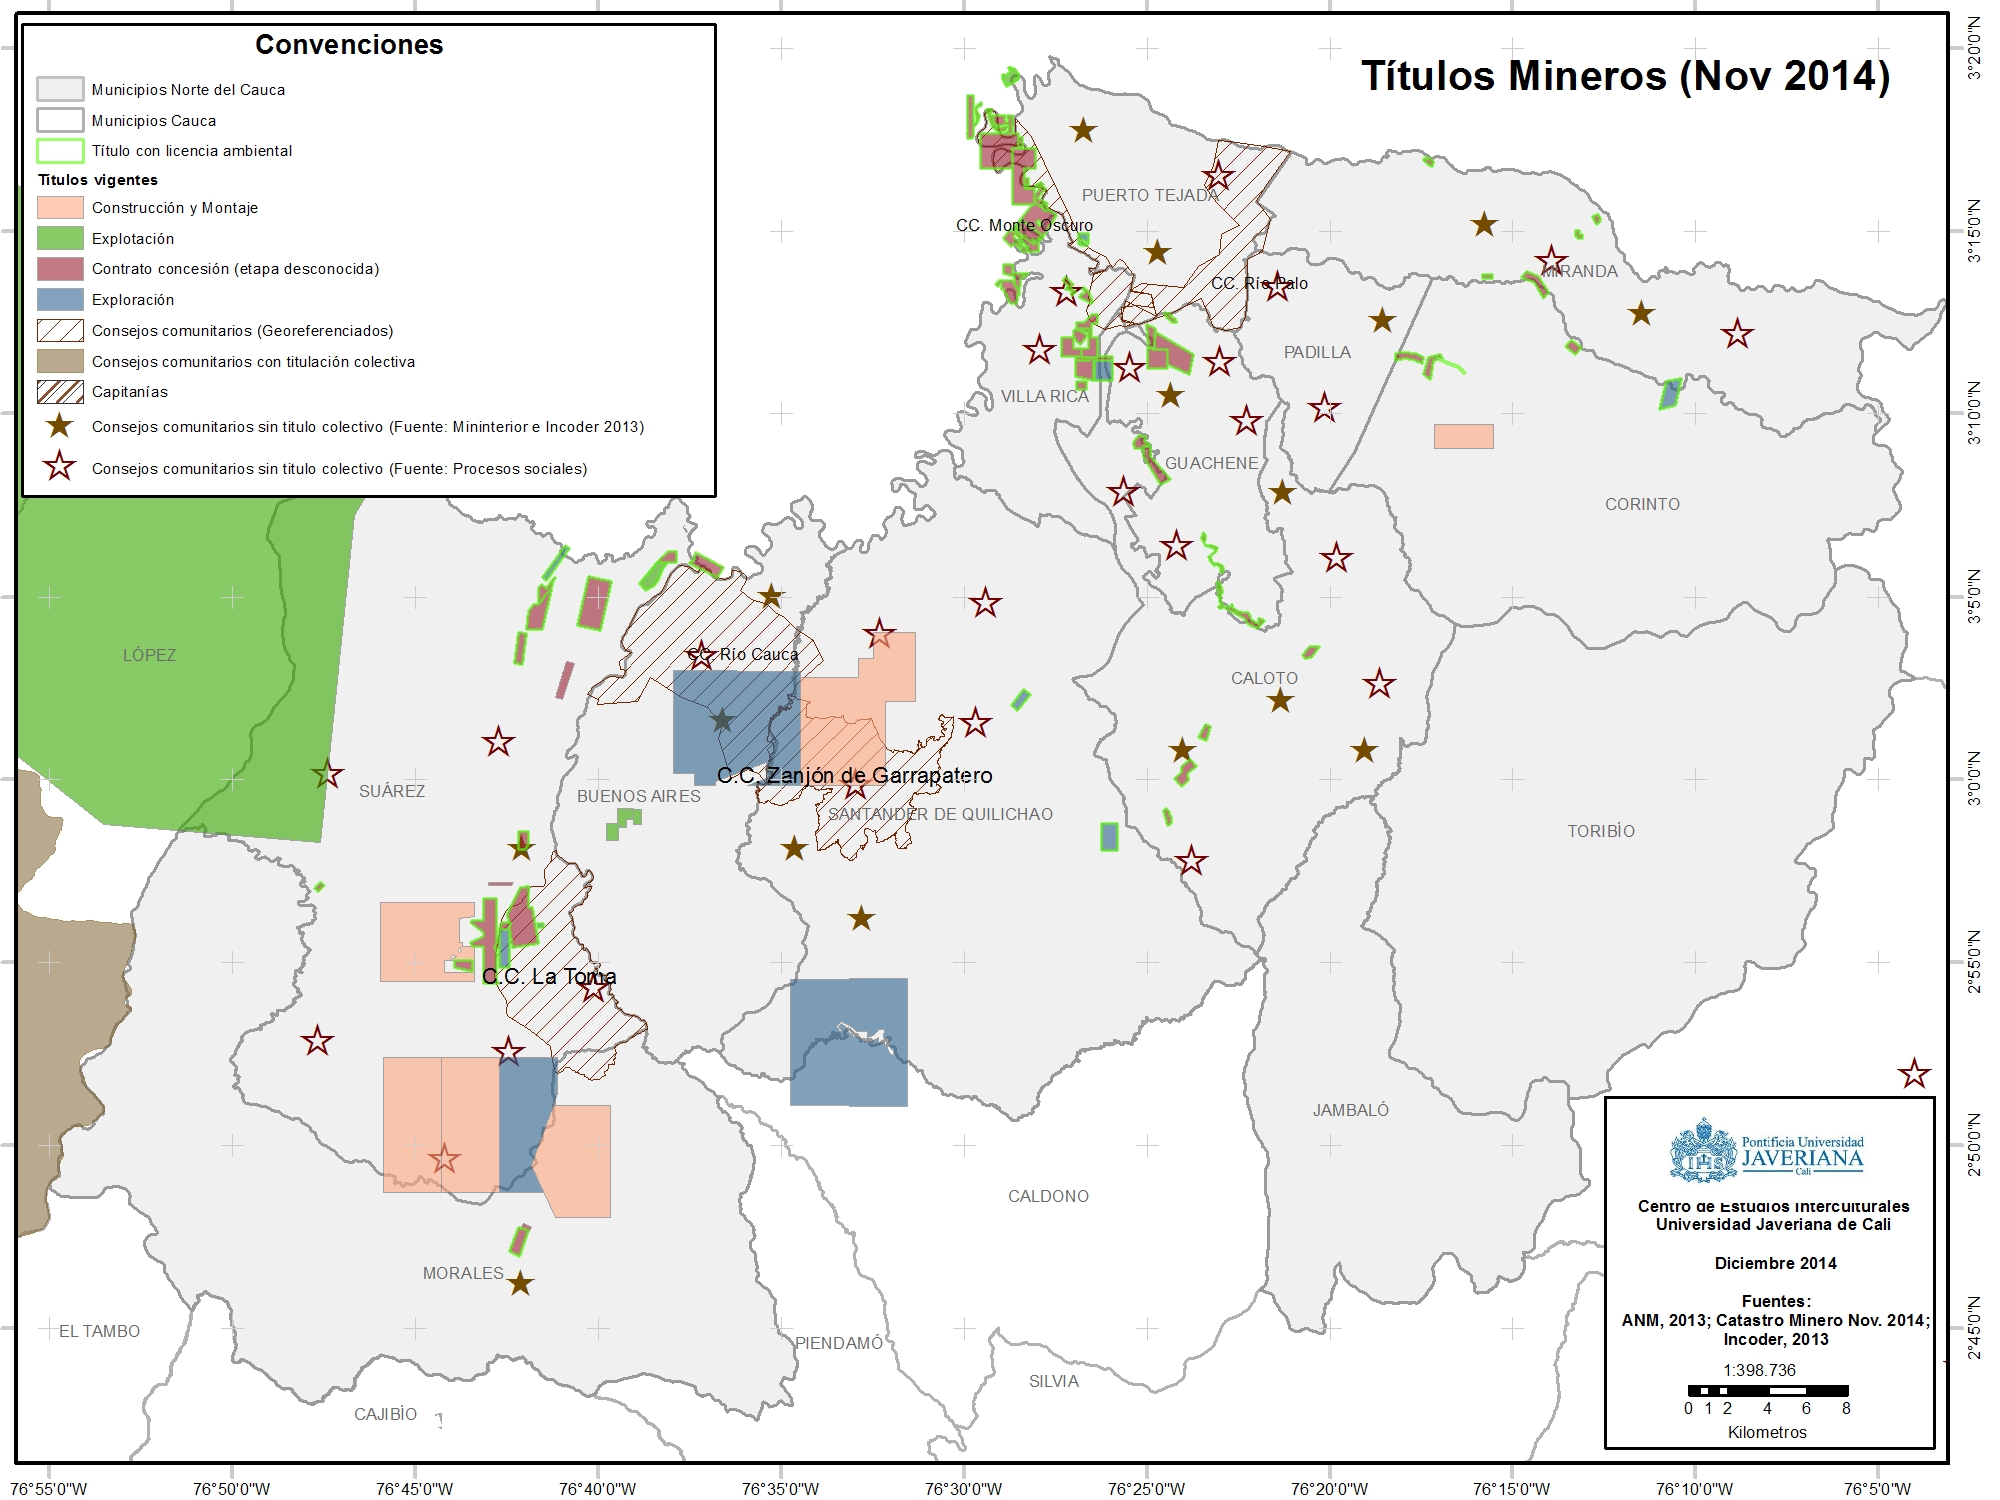 Títulos Mineros Norte del Cauca